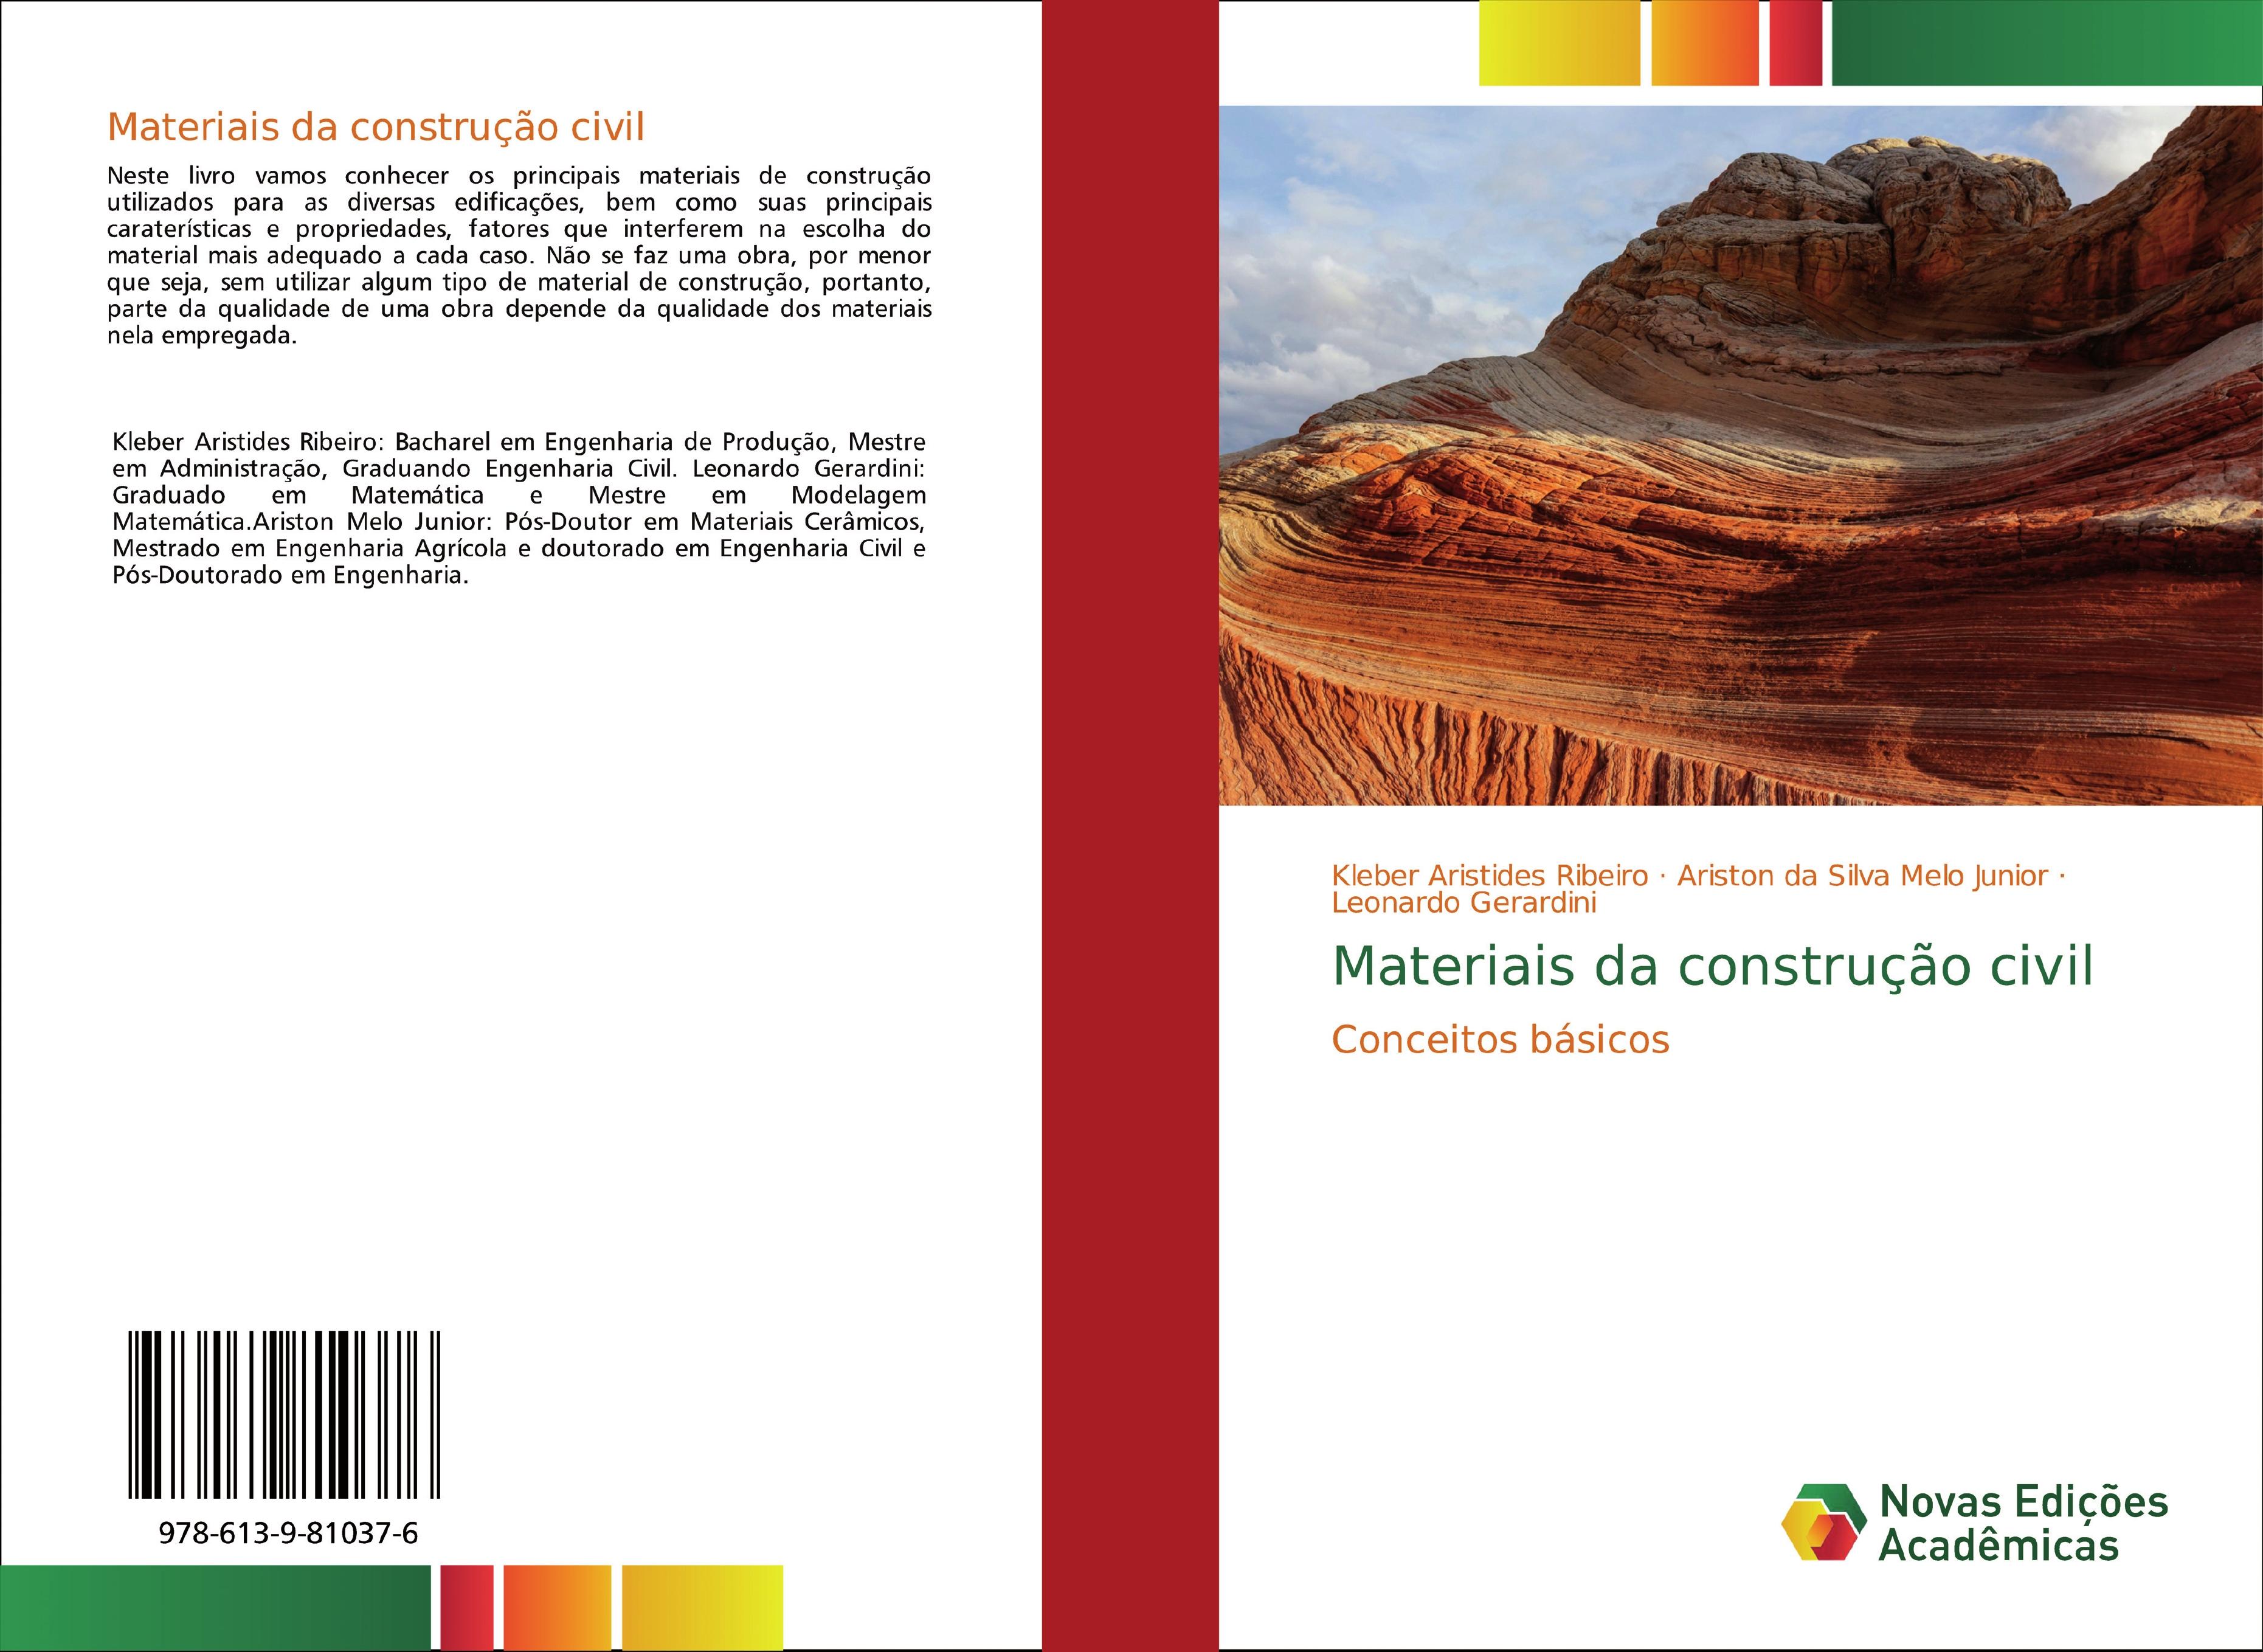 Materiais da construção civil - Kleber Aristides Ribeiro Ariston da Silva Melo Junior Leonardo Gerardini